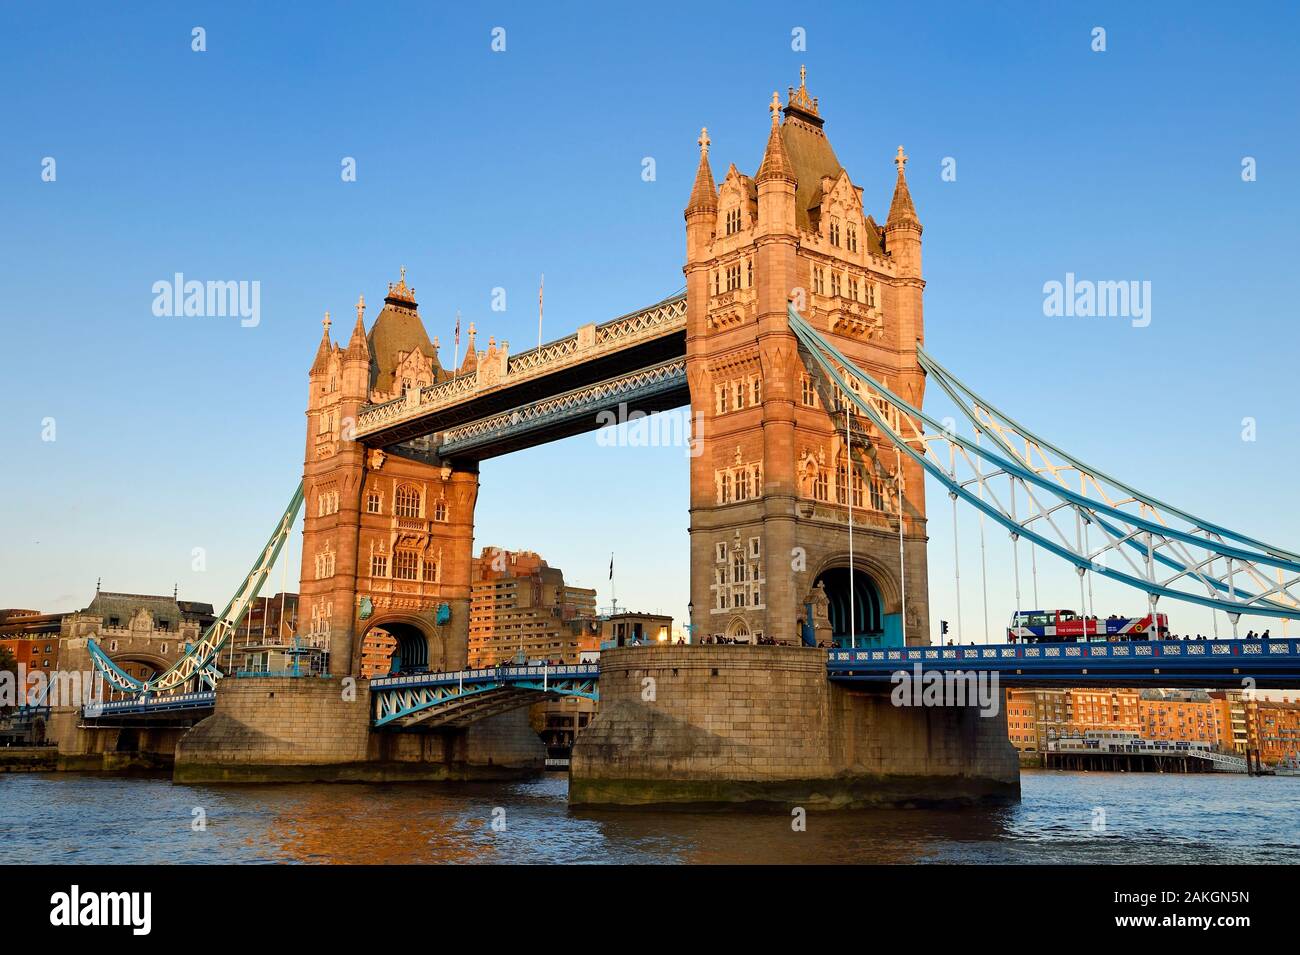 Royaume-uni, Londres, Tower Bridge, pont tournant, de l'autre côté de la Tamise, entre les quartiers de Southwark et de Tower Hamlets Banque D'Images